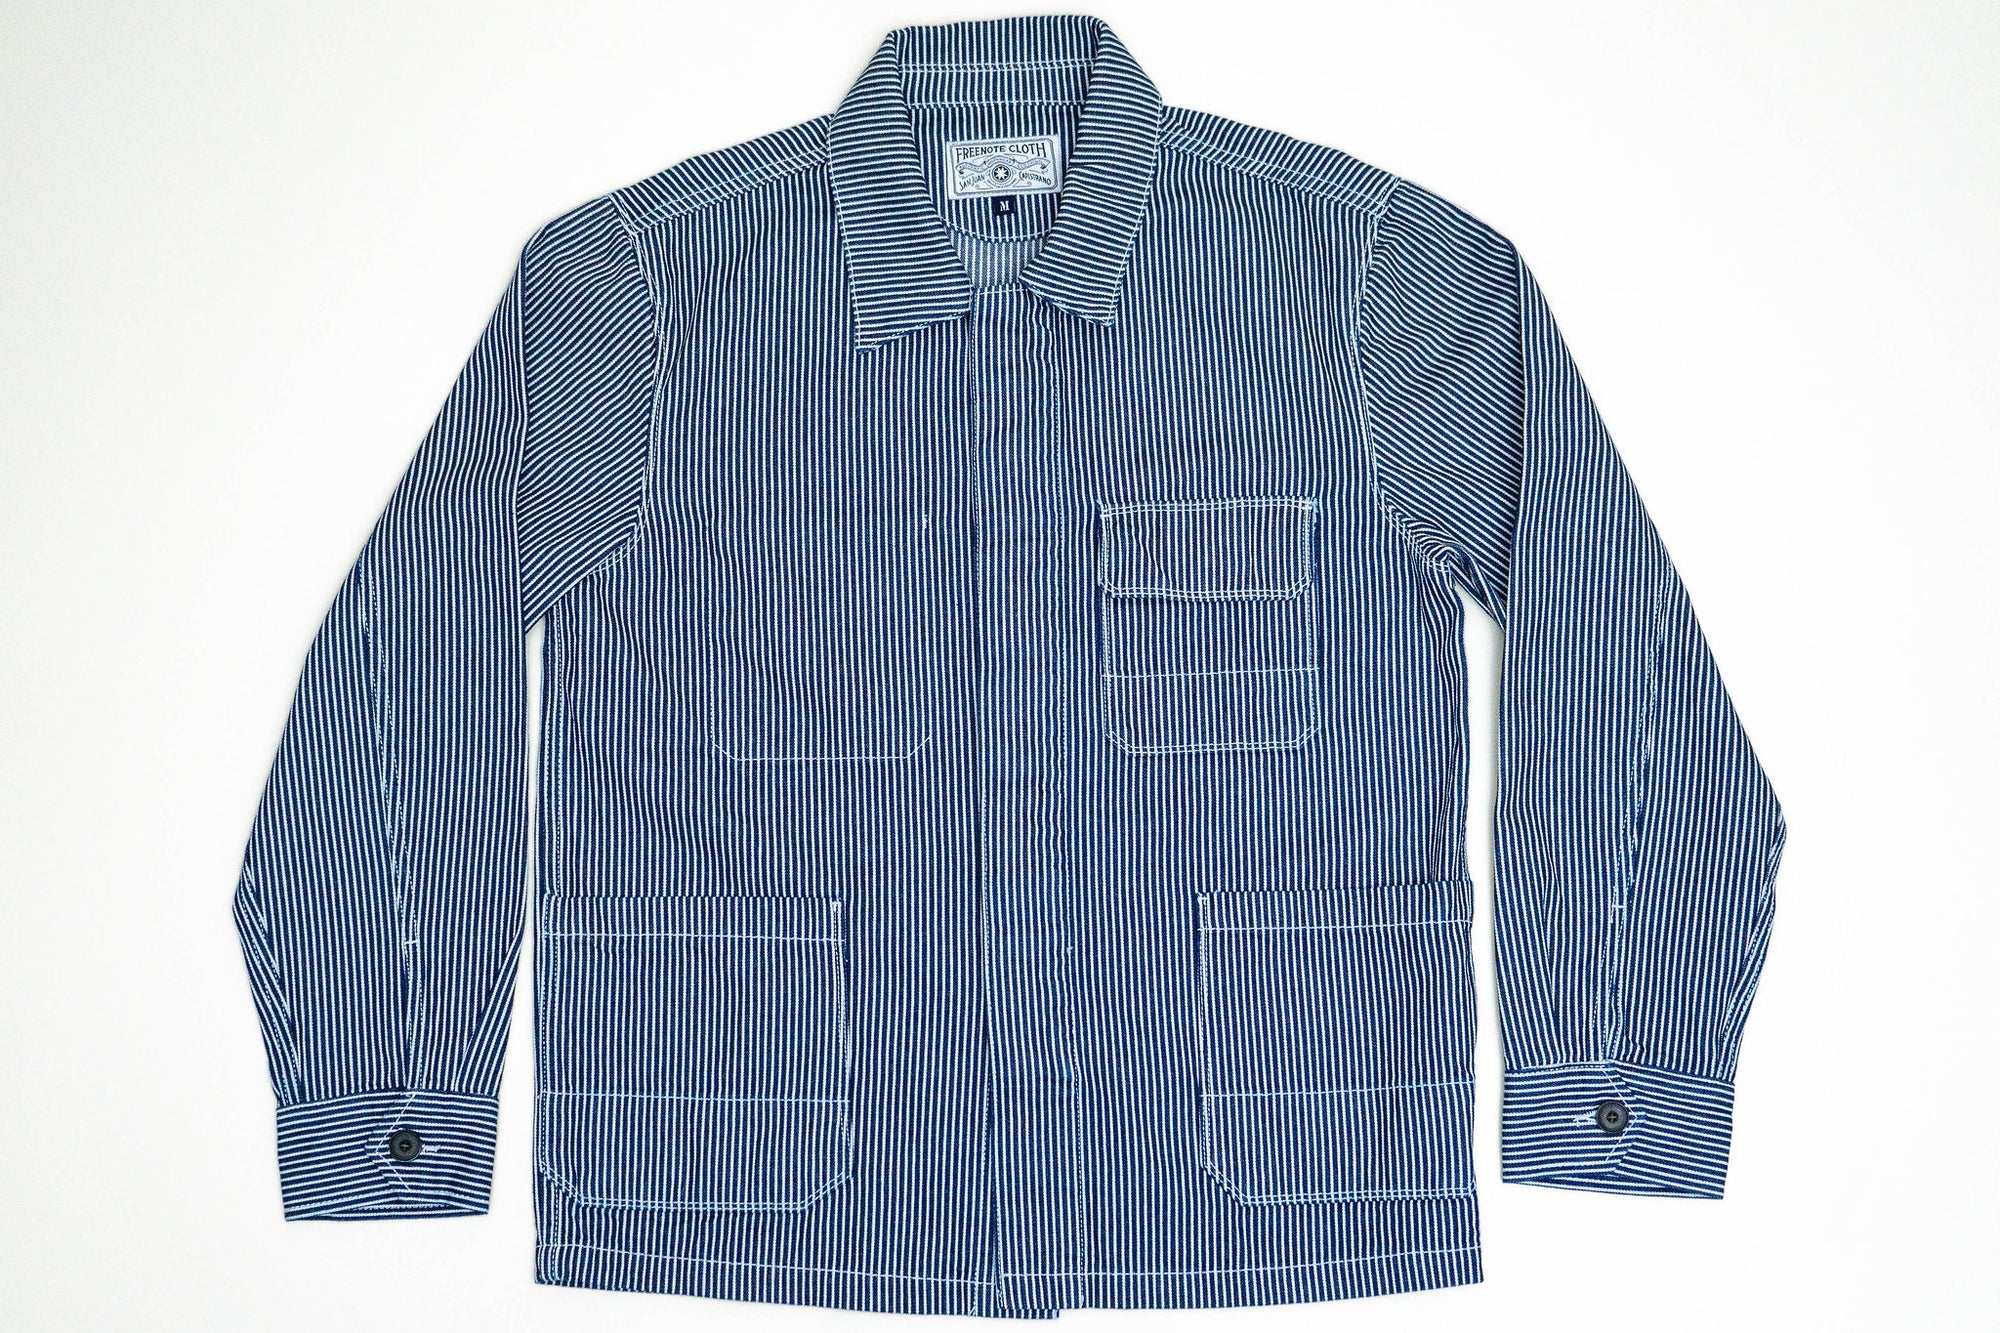 Freenote Cloth CC-1 Chore Coat - Stripe